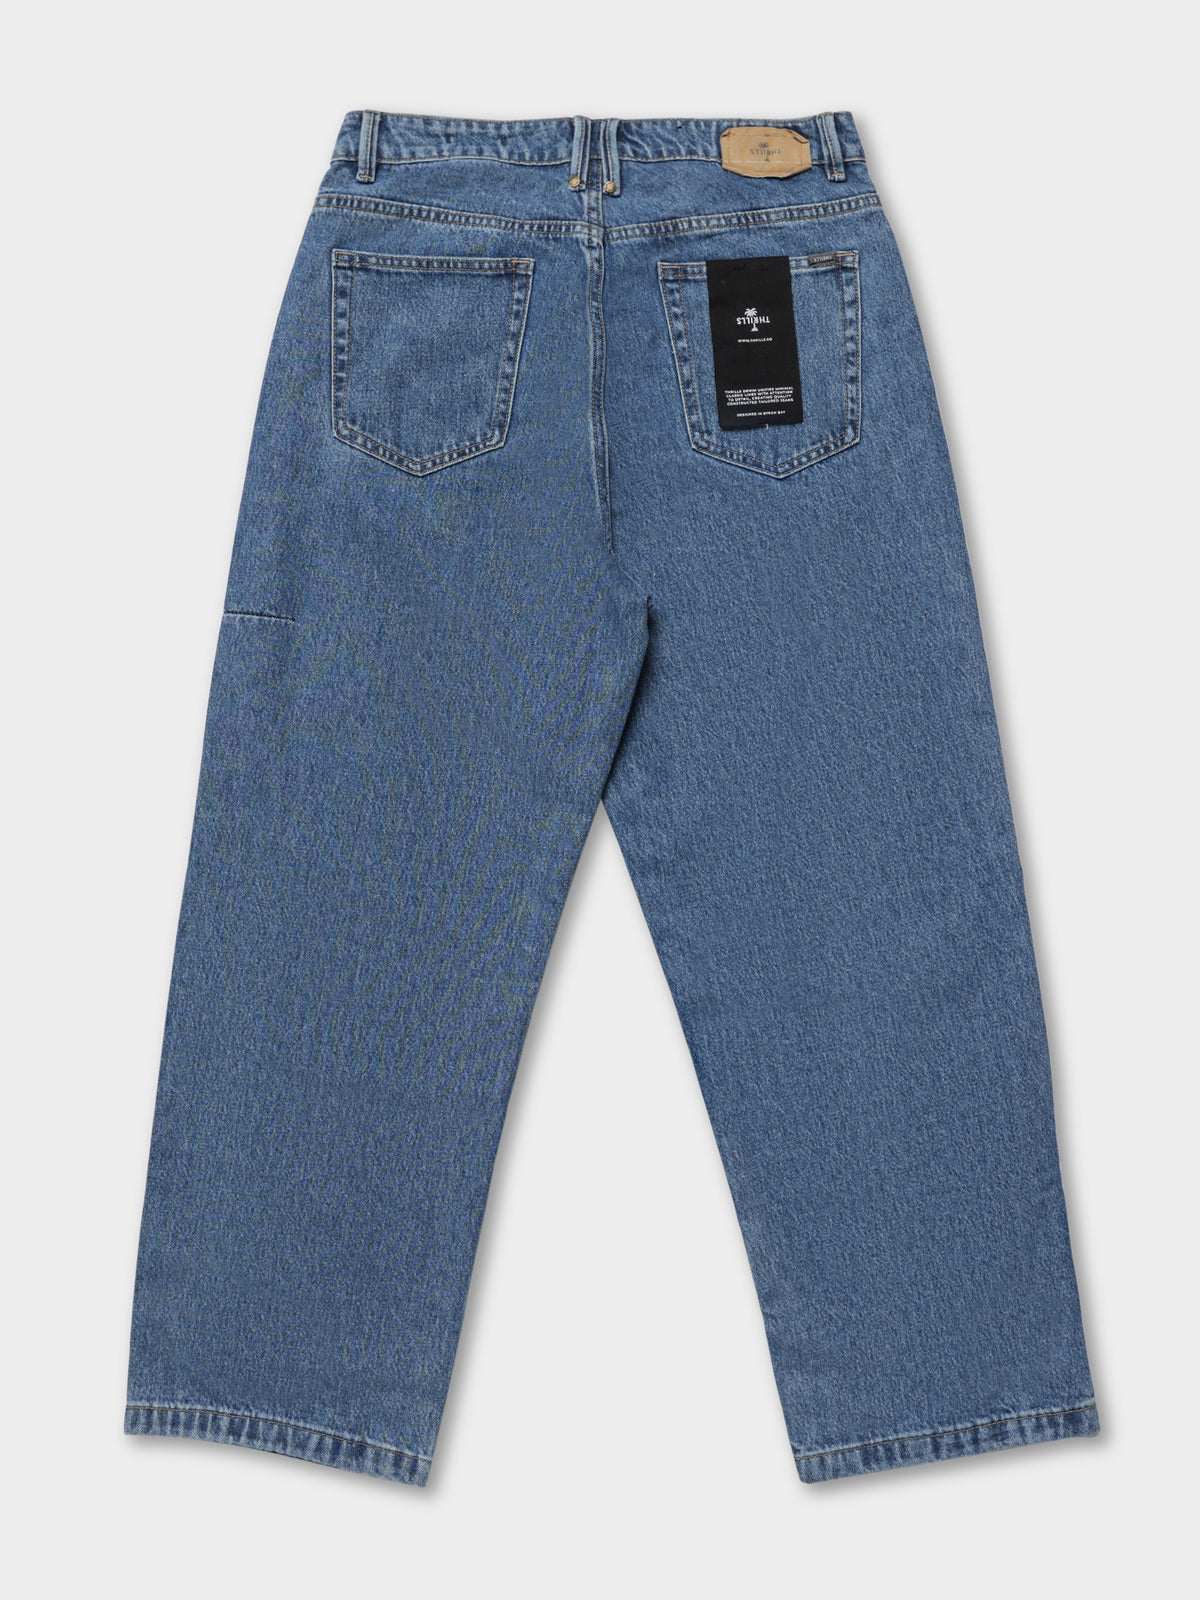 Big Slacker Denim Jeans in Highway Blue